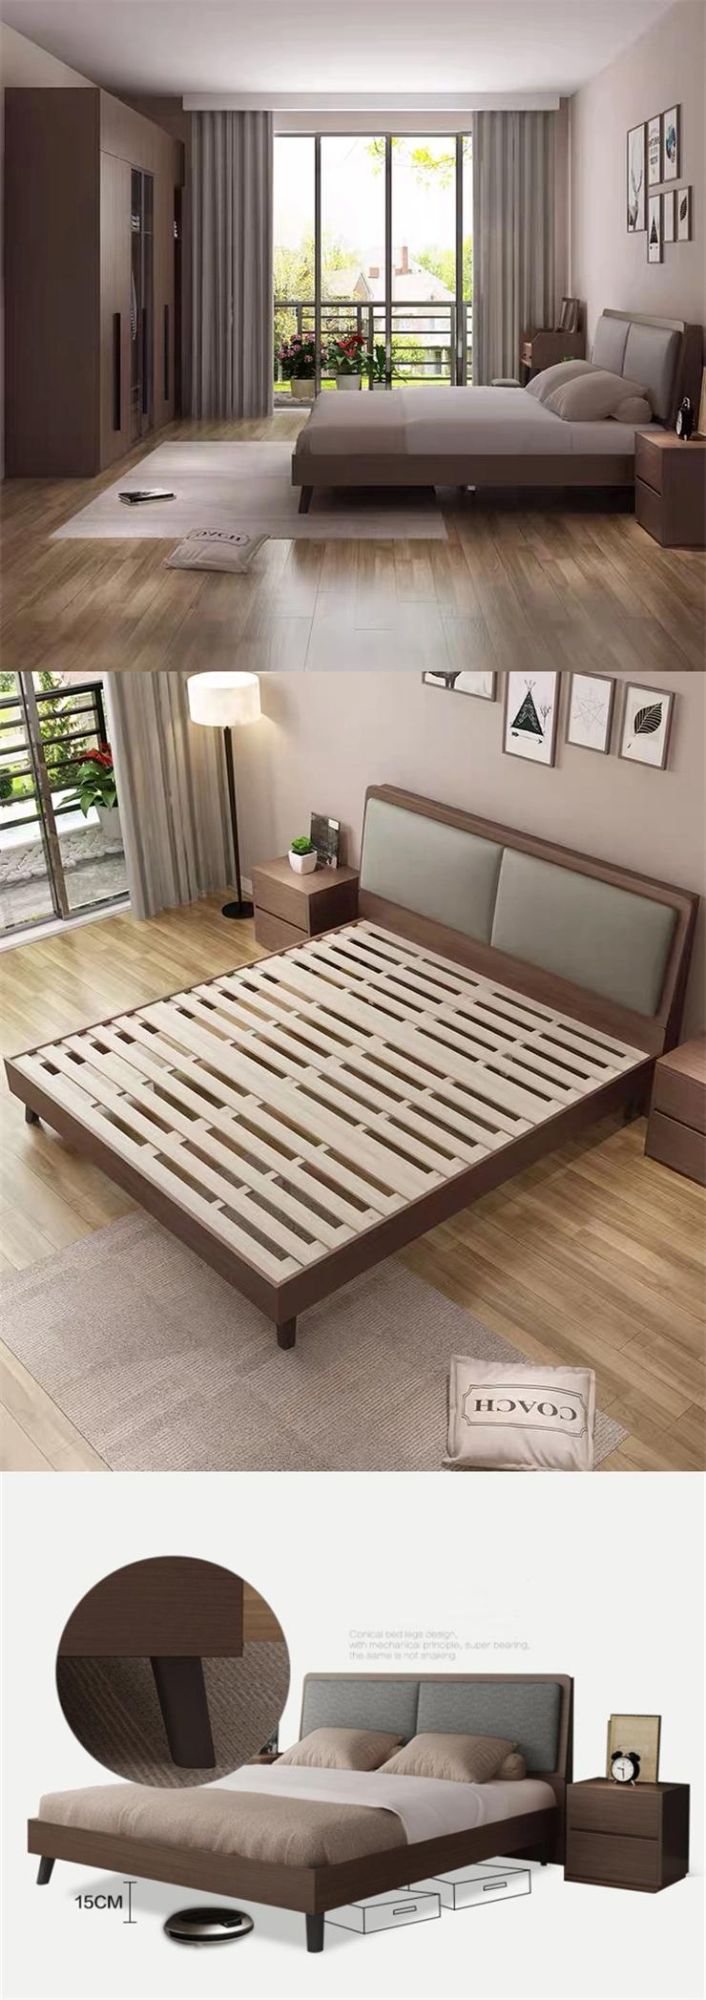 Luxury Modern King Beds Dresser Home Furniture Set for 5 Star Hotel Bedroom Bed